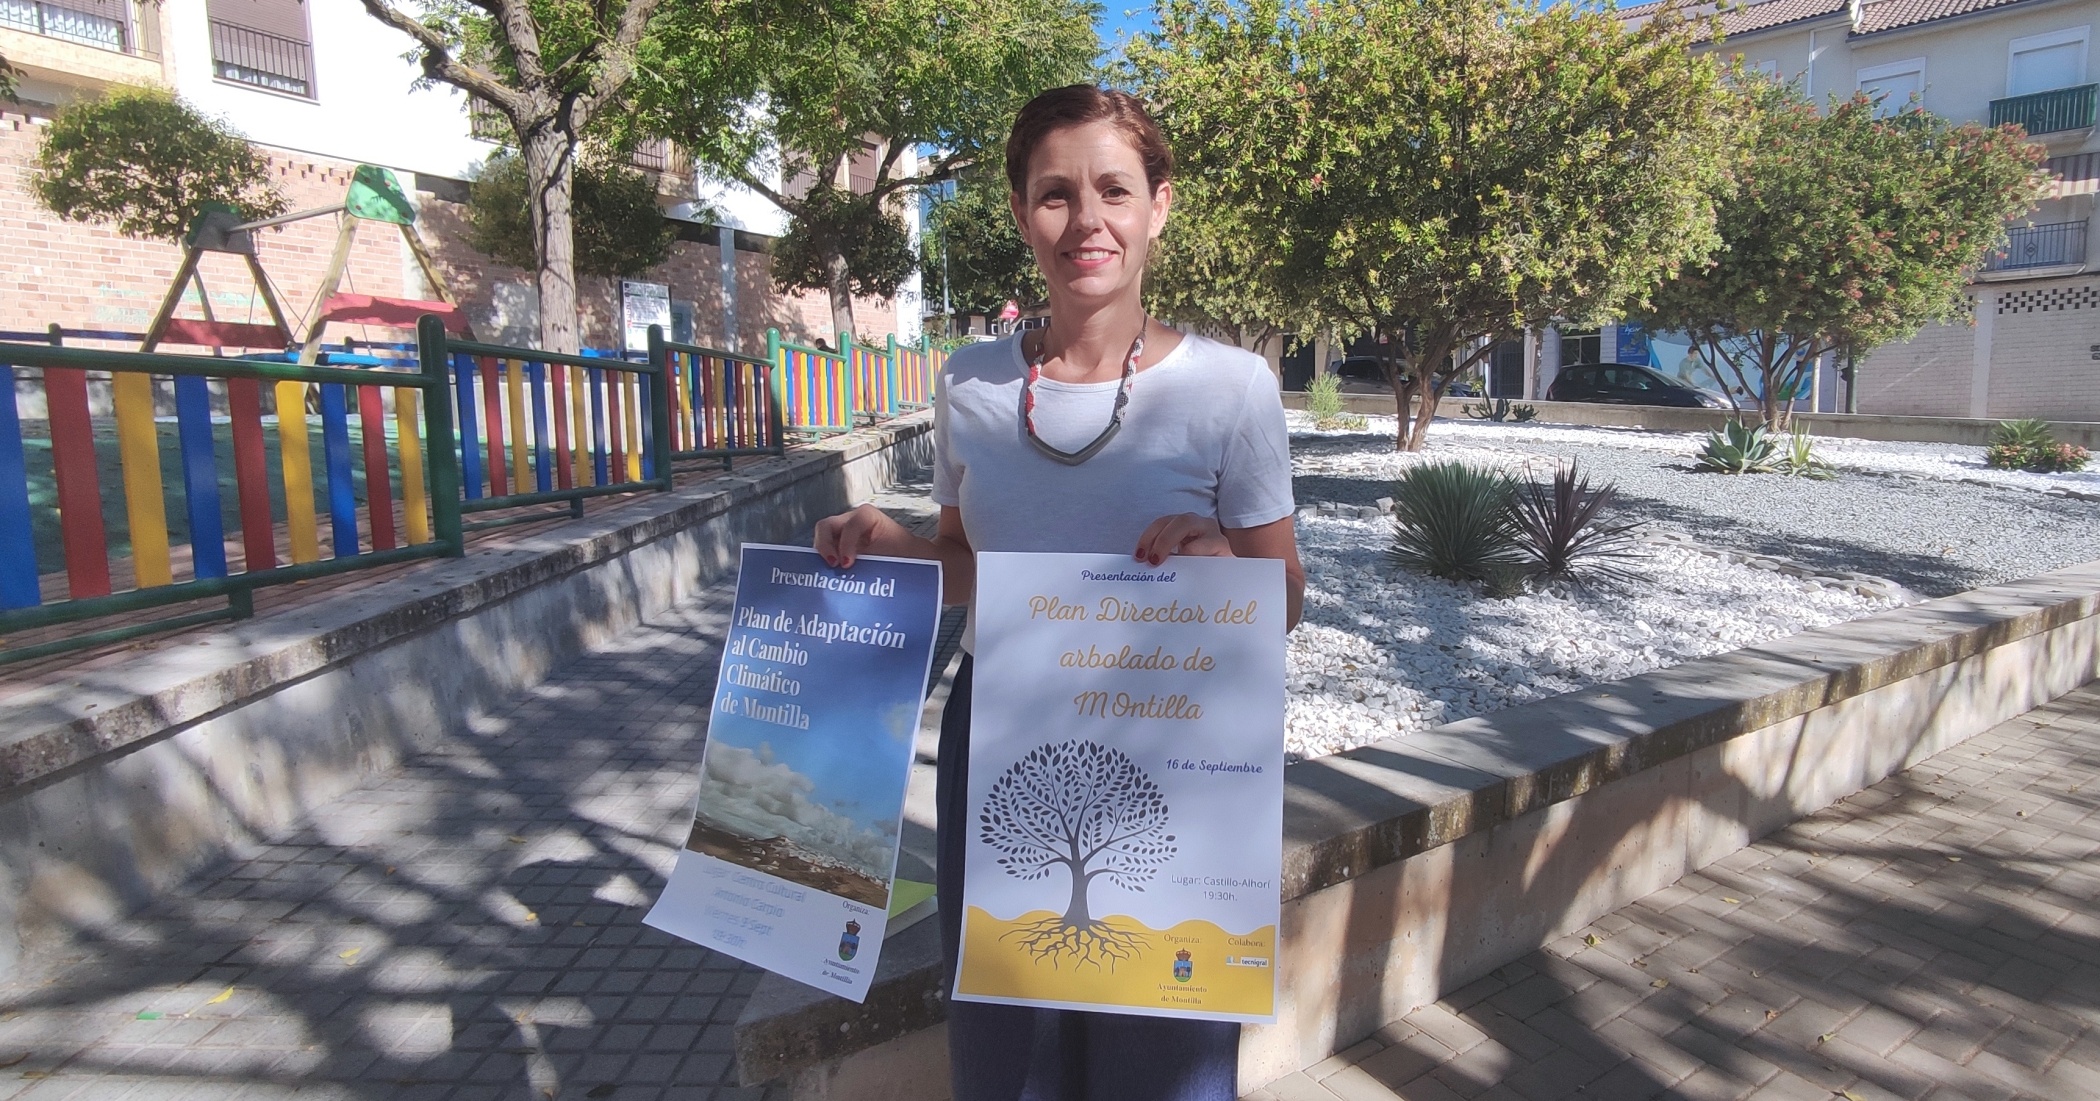 La delegada de Medio Ambiente, Raquel Casado, presenta los planes estratégicos medioambientales para Montilla